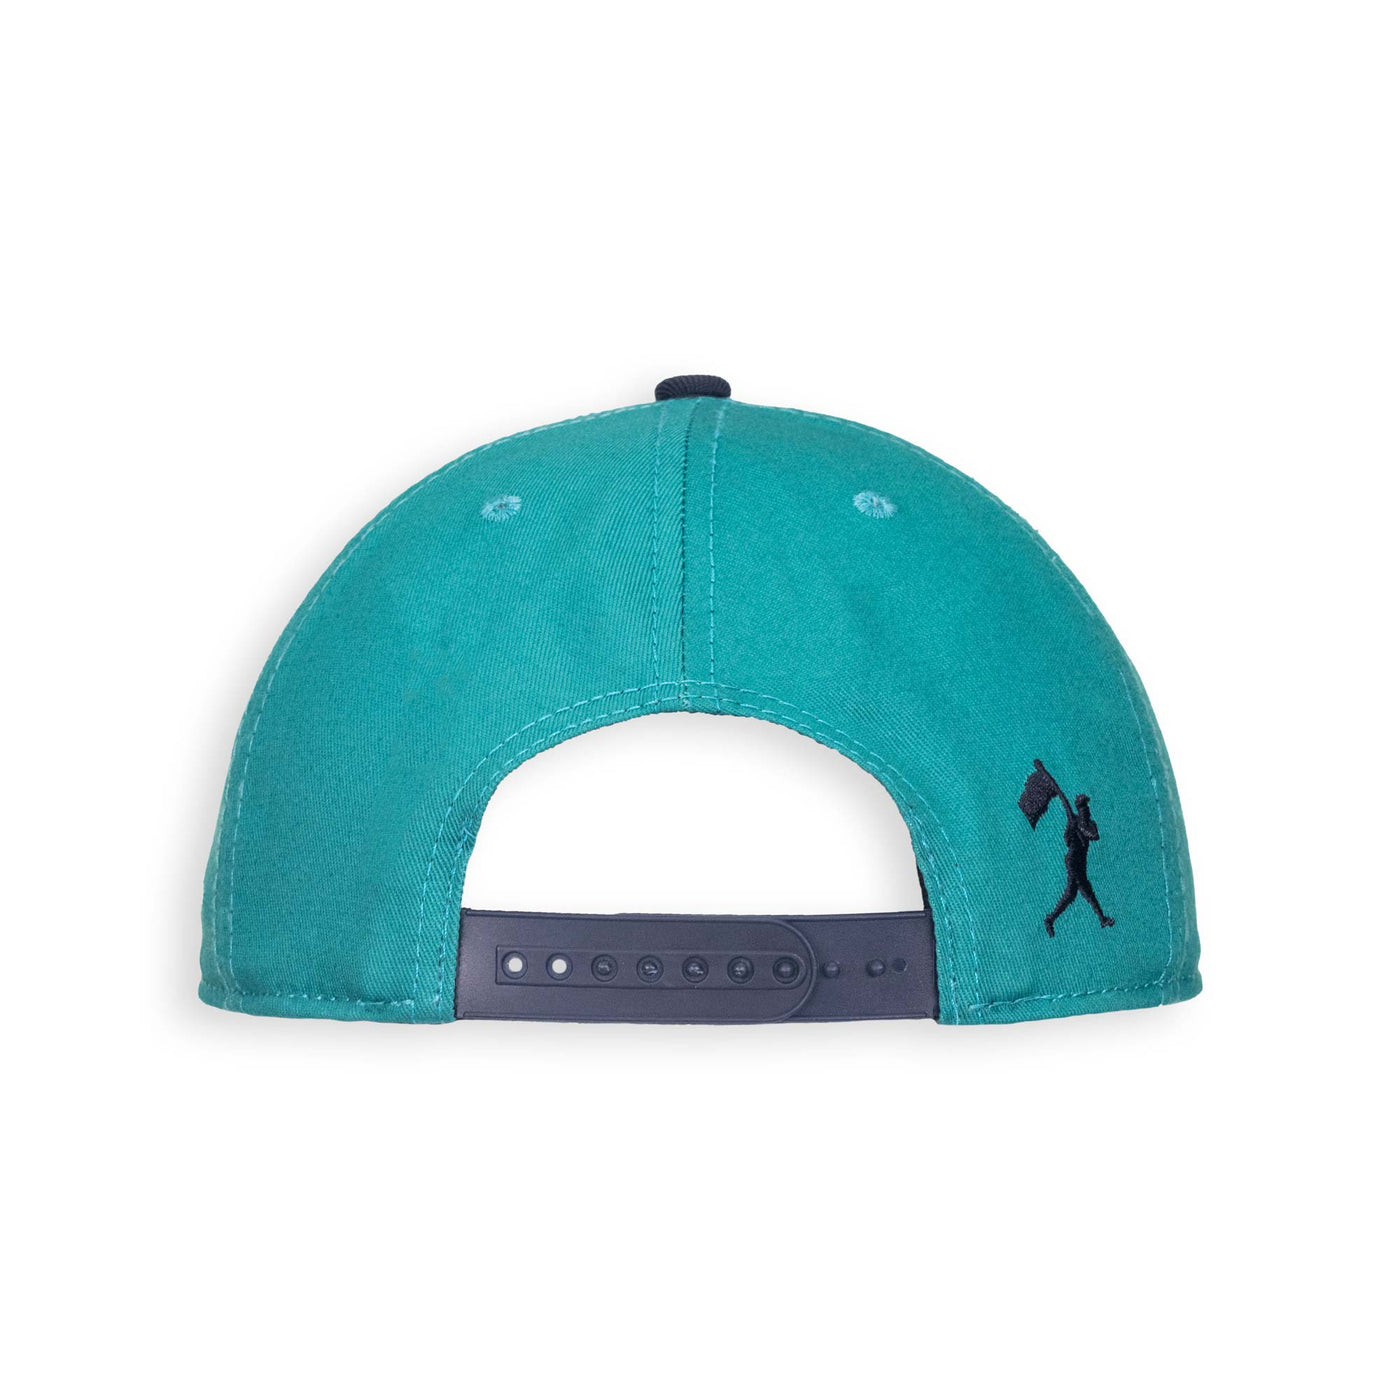 Gorra Silhouette para jóvenes (verde azulado) - Colección Ken Griffey Jr.